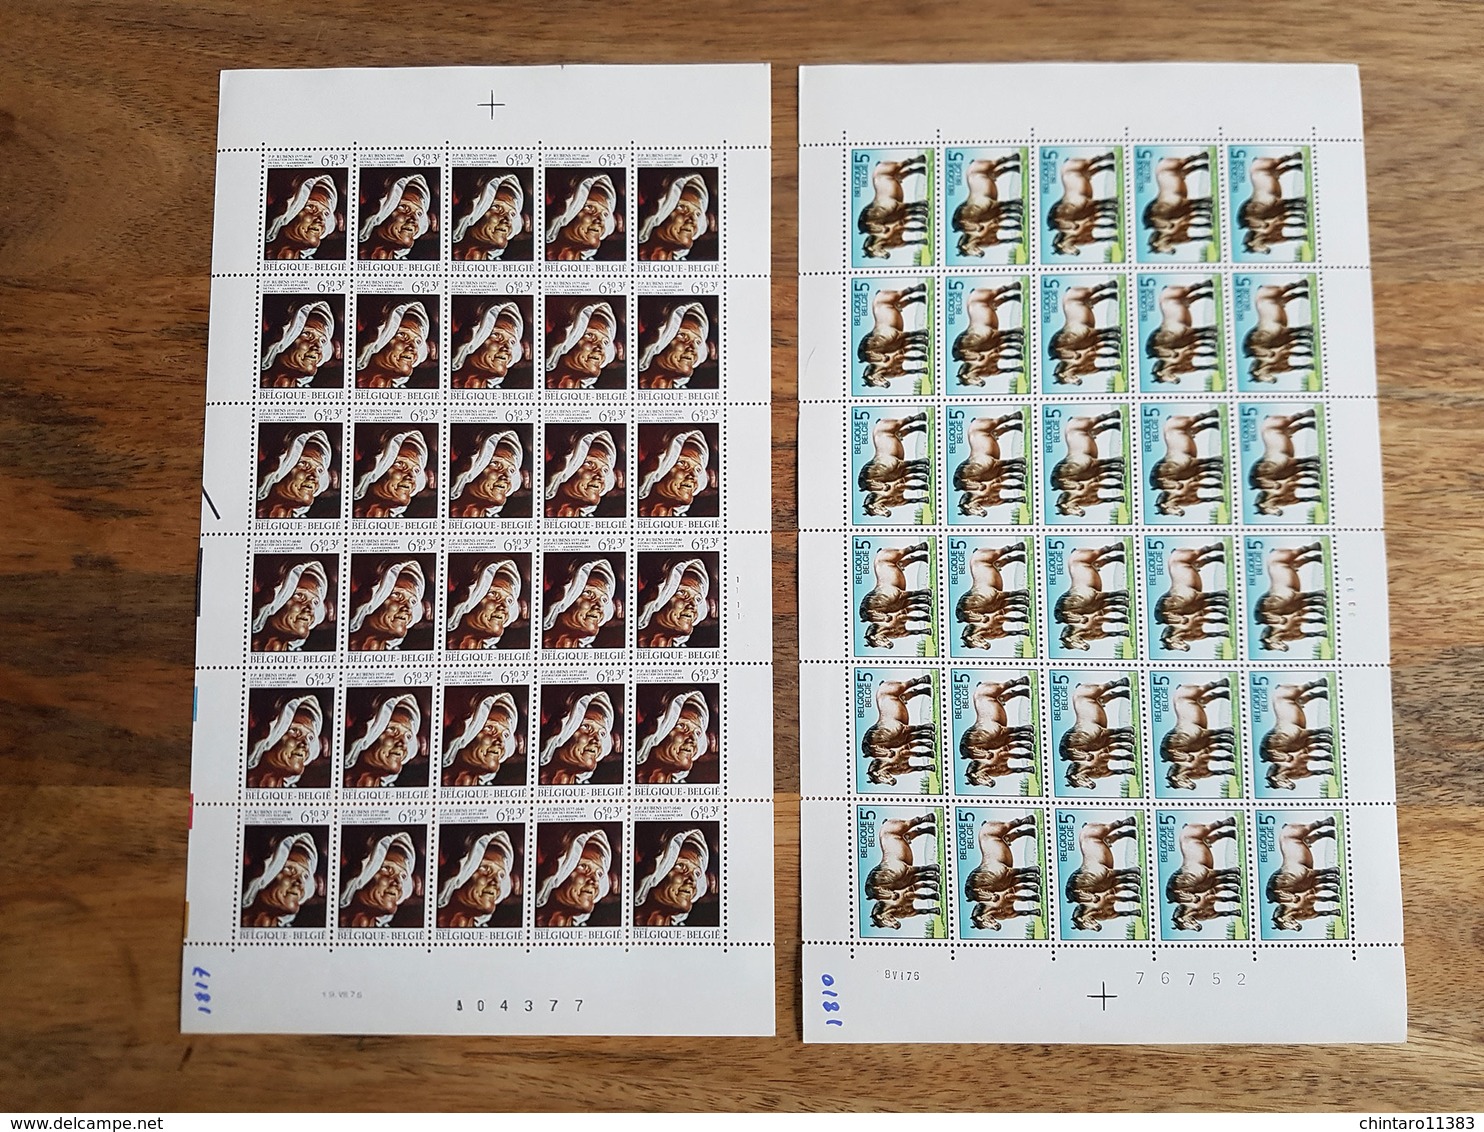 Lot feuilles complètes de timbres Belgique - Année 1976